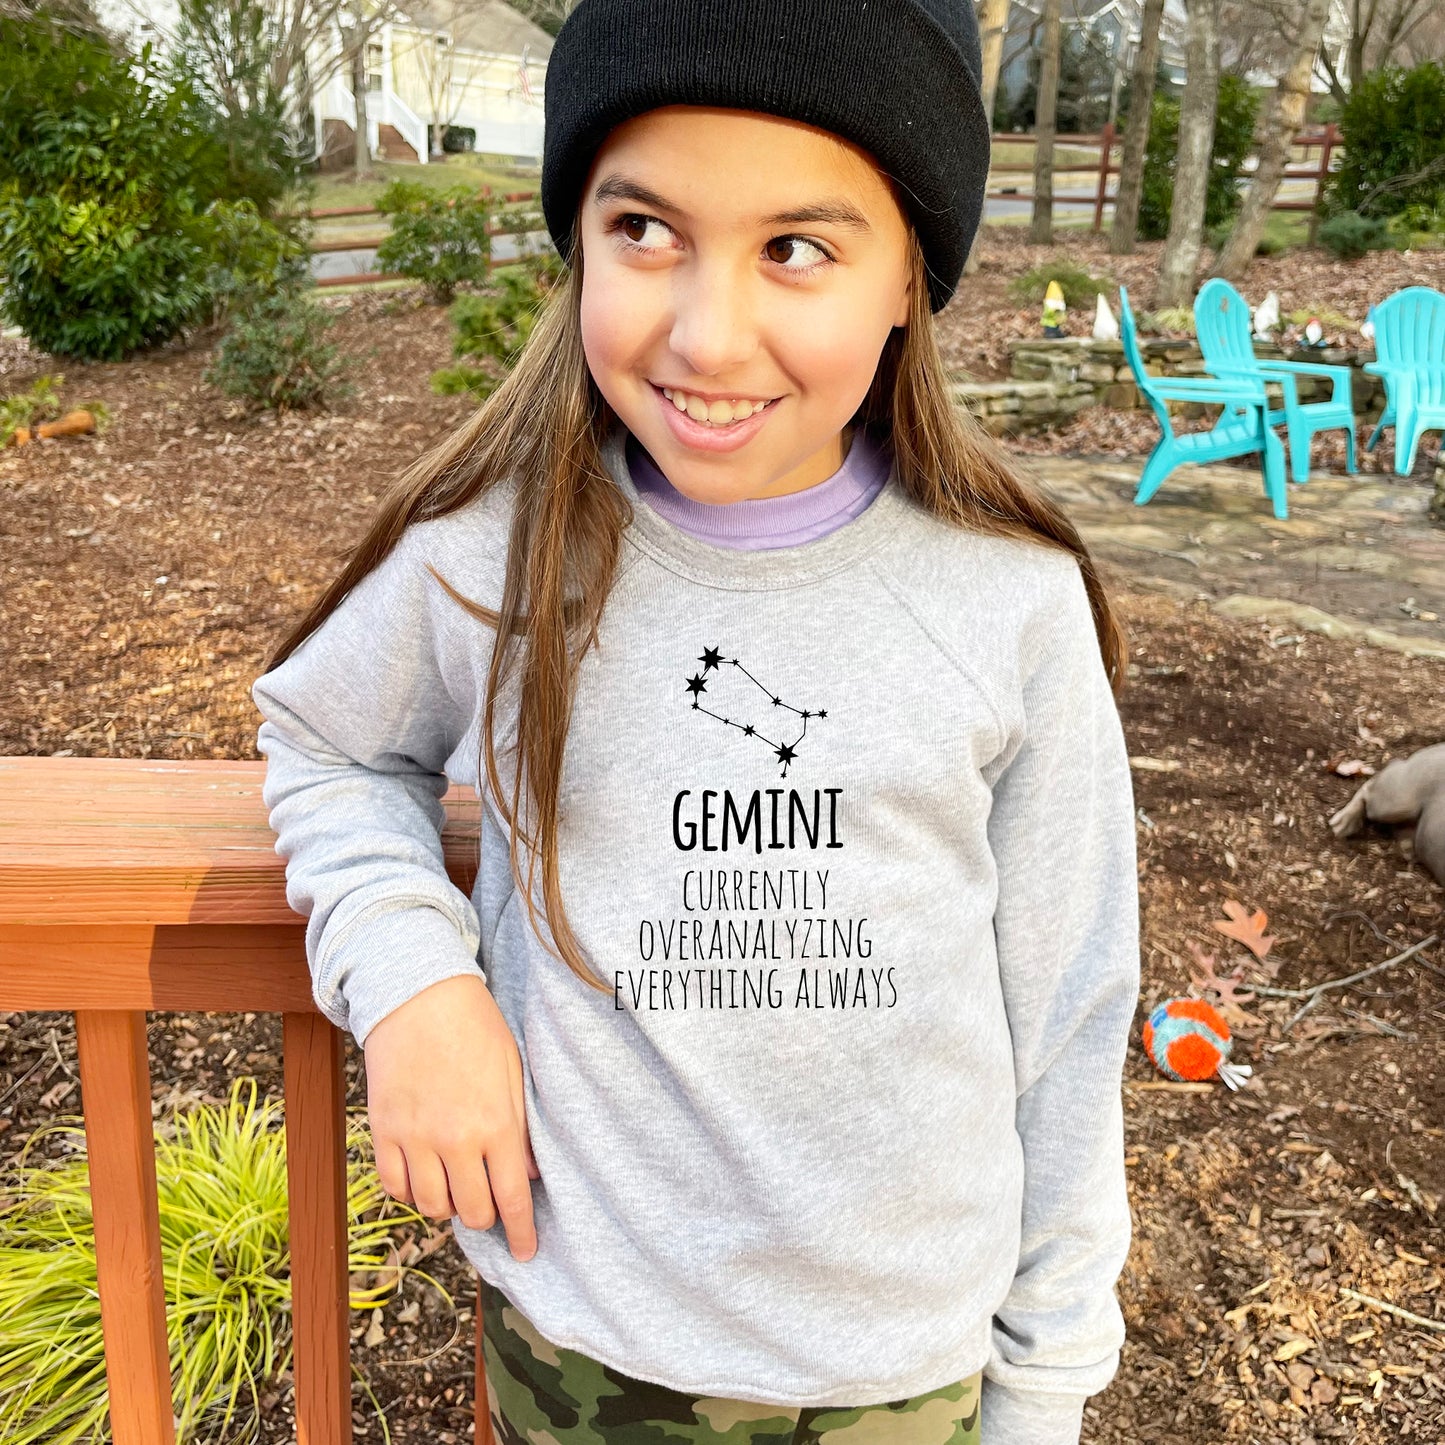 Gemini - Kid's Sweatshirt - Heather Gray or Mauve